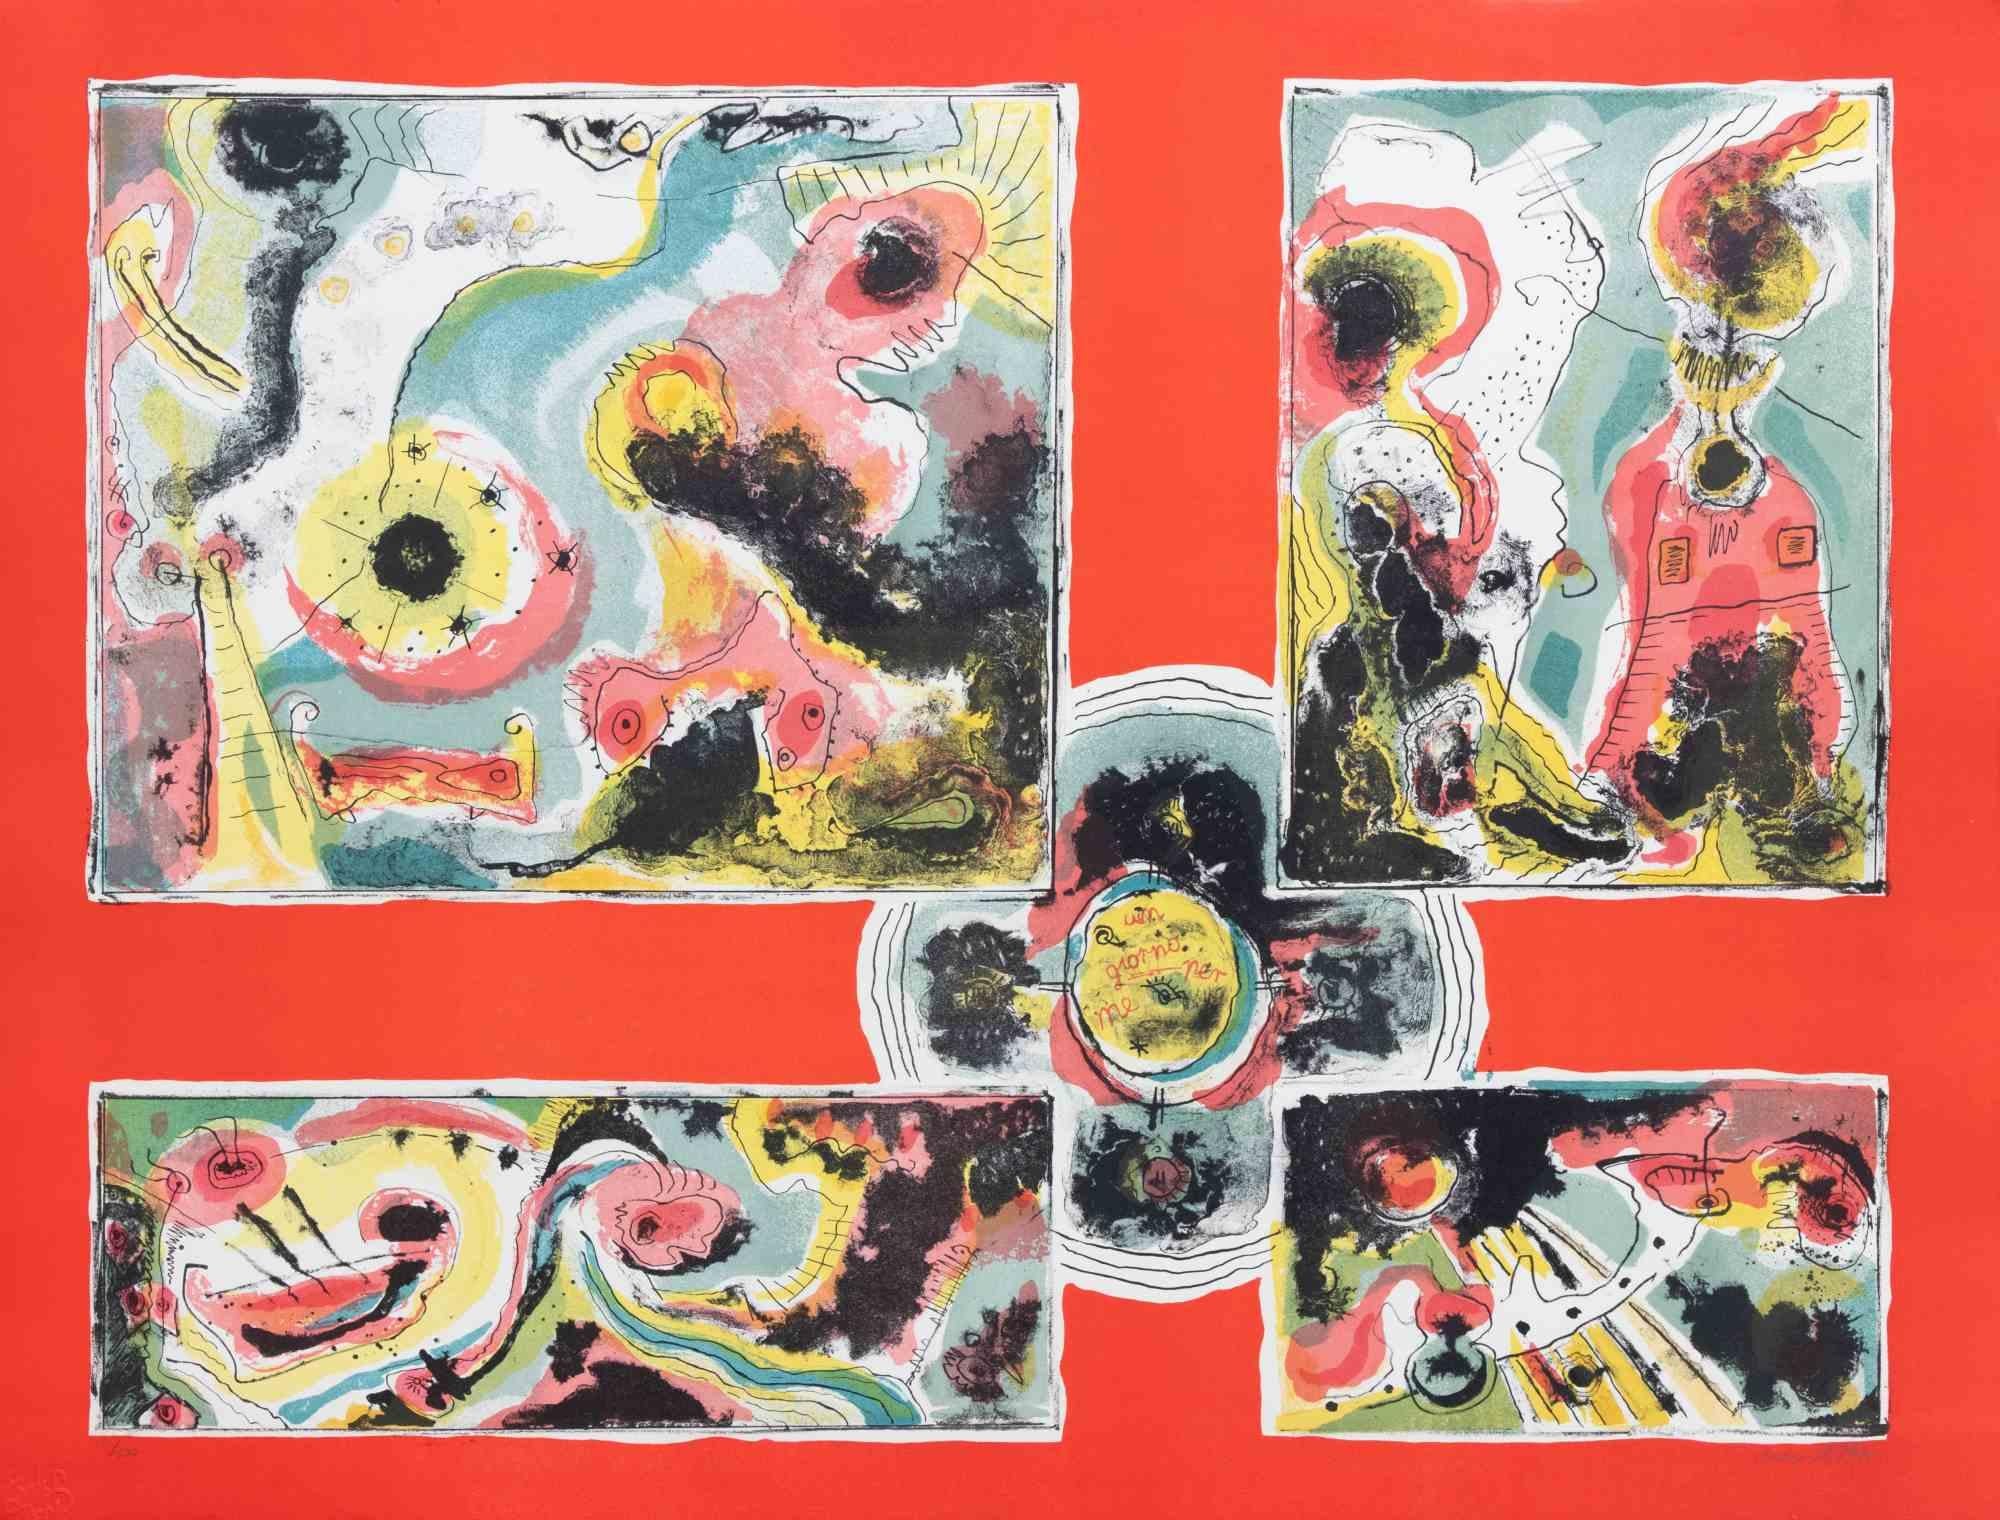 Red Abstract ist ein zeitgenössisches Kunstwerk von Le Oben aus den 1970er Jahren.

Gemischtfarbige Lithographie.

Handsigniert am unteren Rand.

Am unteren Rand nummeriert.

Auflage von 84/100. 